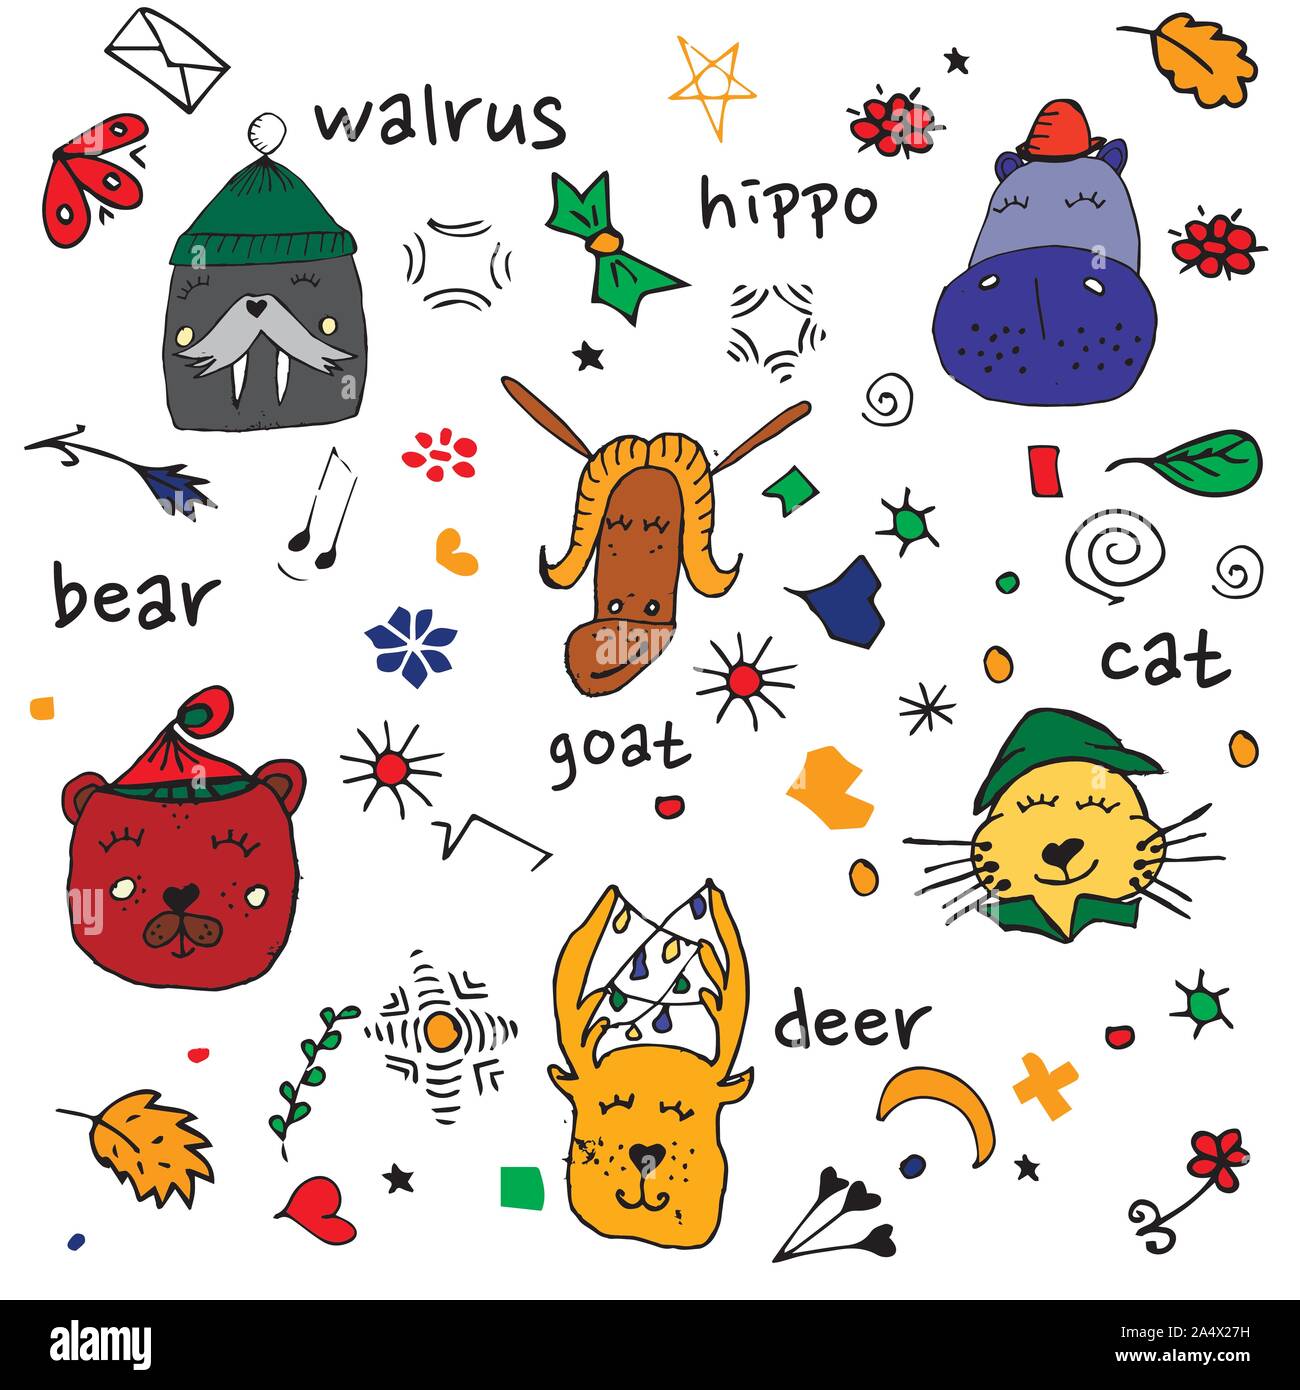 Bunte tierischen Freunde Sammlung einschließlich walross, Hippo, Ziege, Katze, Hirsch, Bär. Cute Hand gezeichnet Doodles. Gut für Poster, Aufkleber, Karten, Alphabet und Stock Vektor